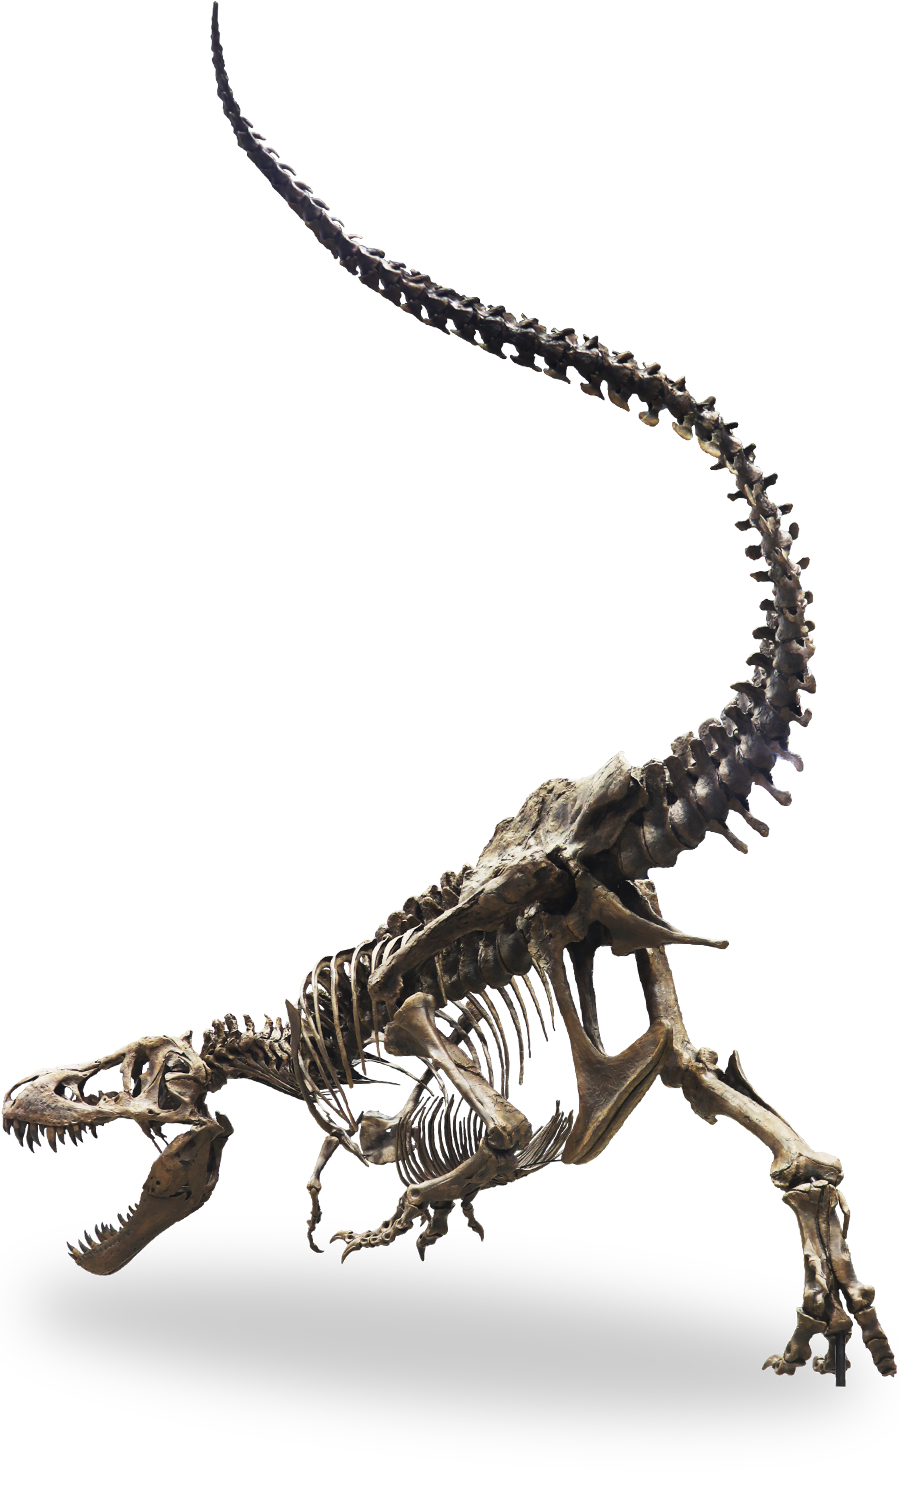 ティラノサウルス「スタン」の骨格標本イメージ